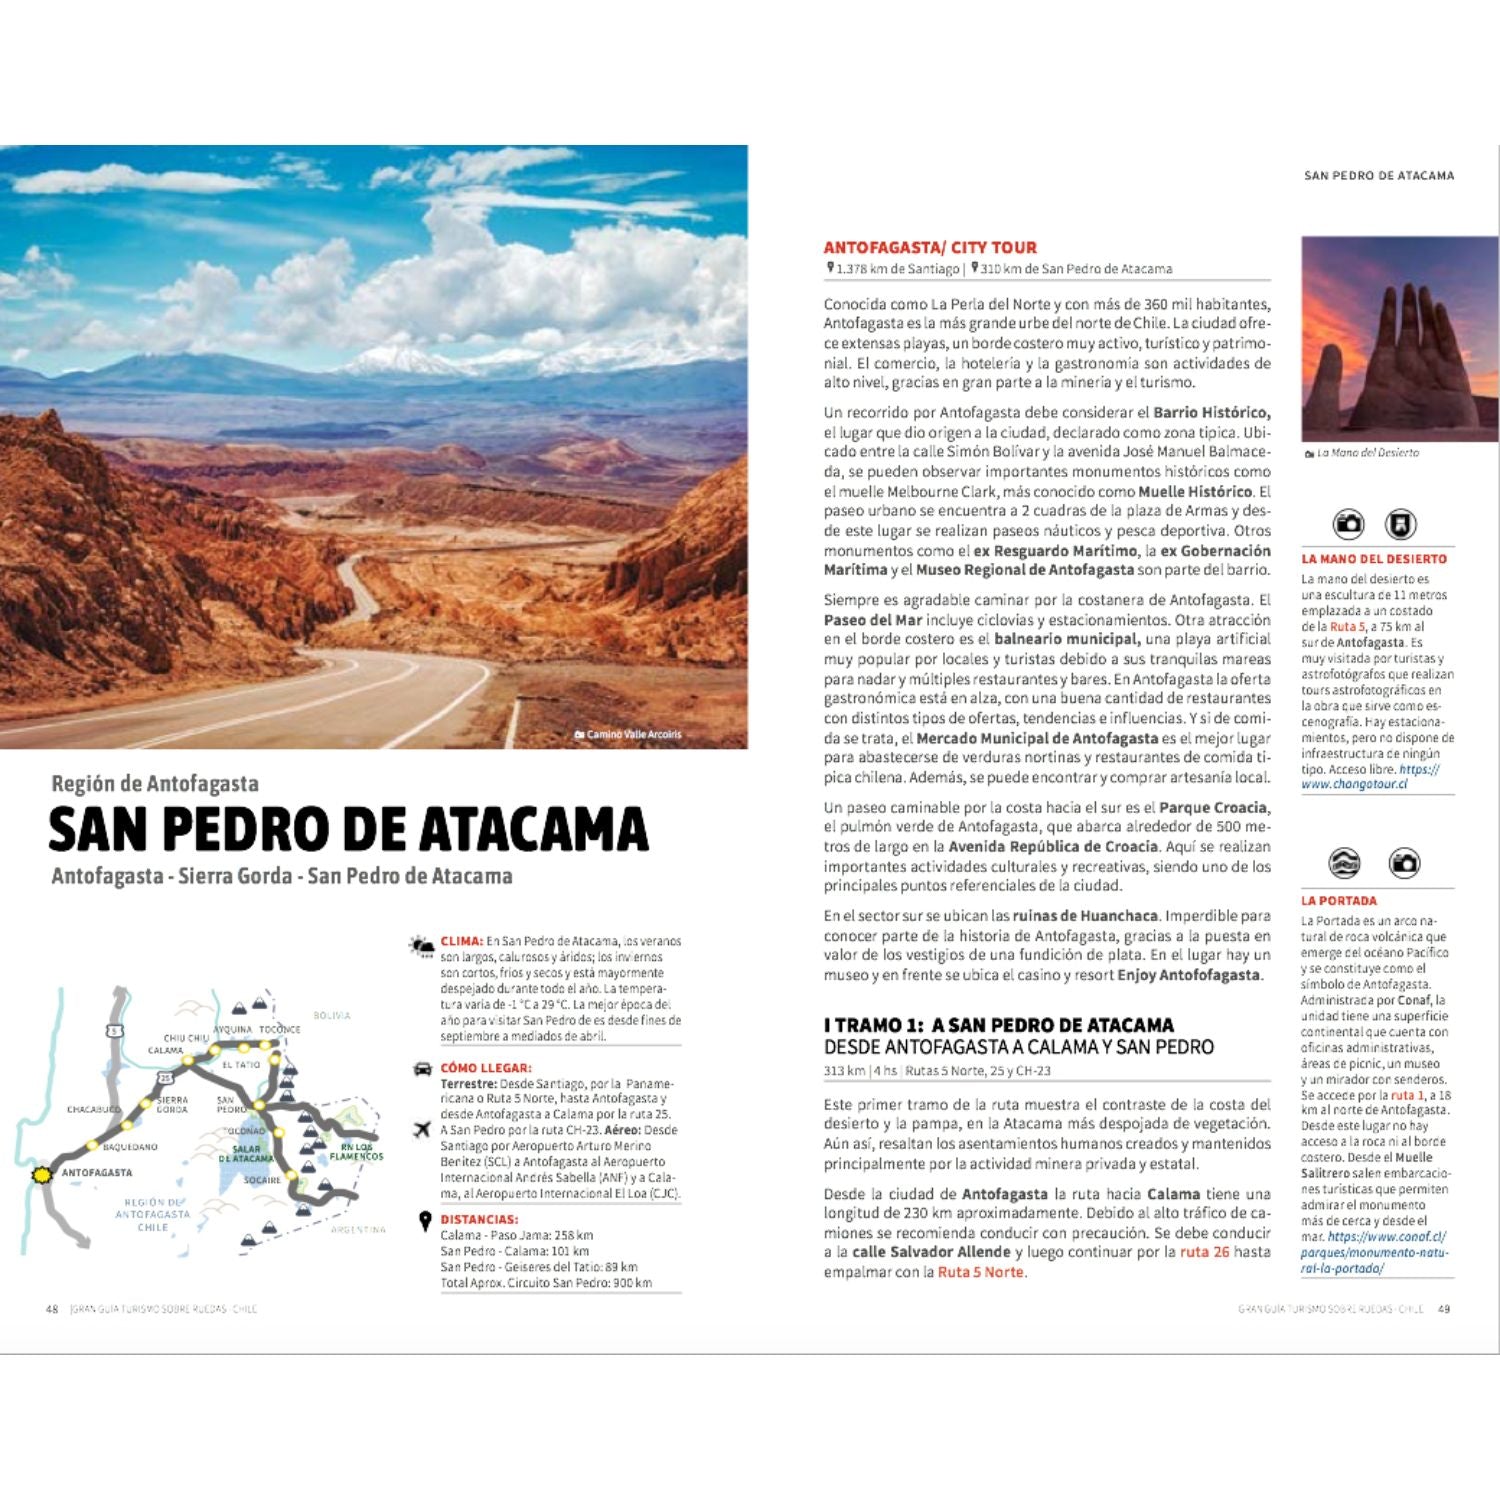 La gran guía de Chile - Turismo sobre ruedas